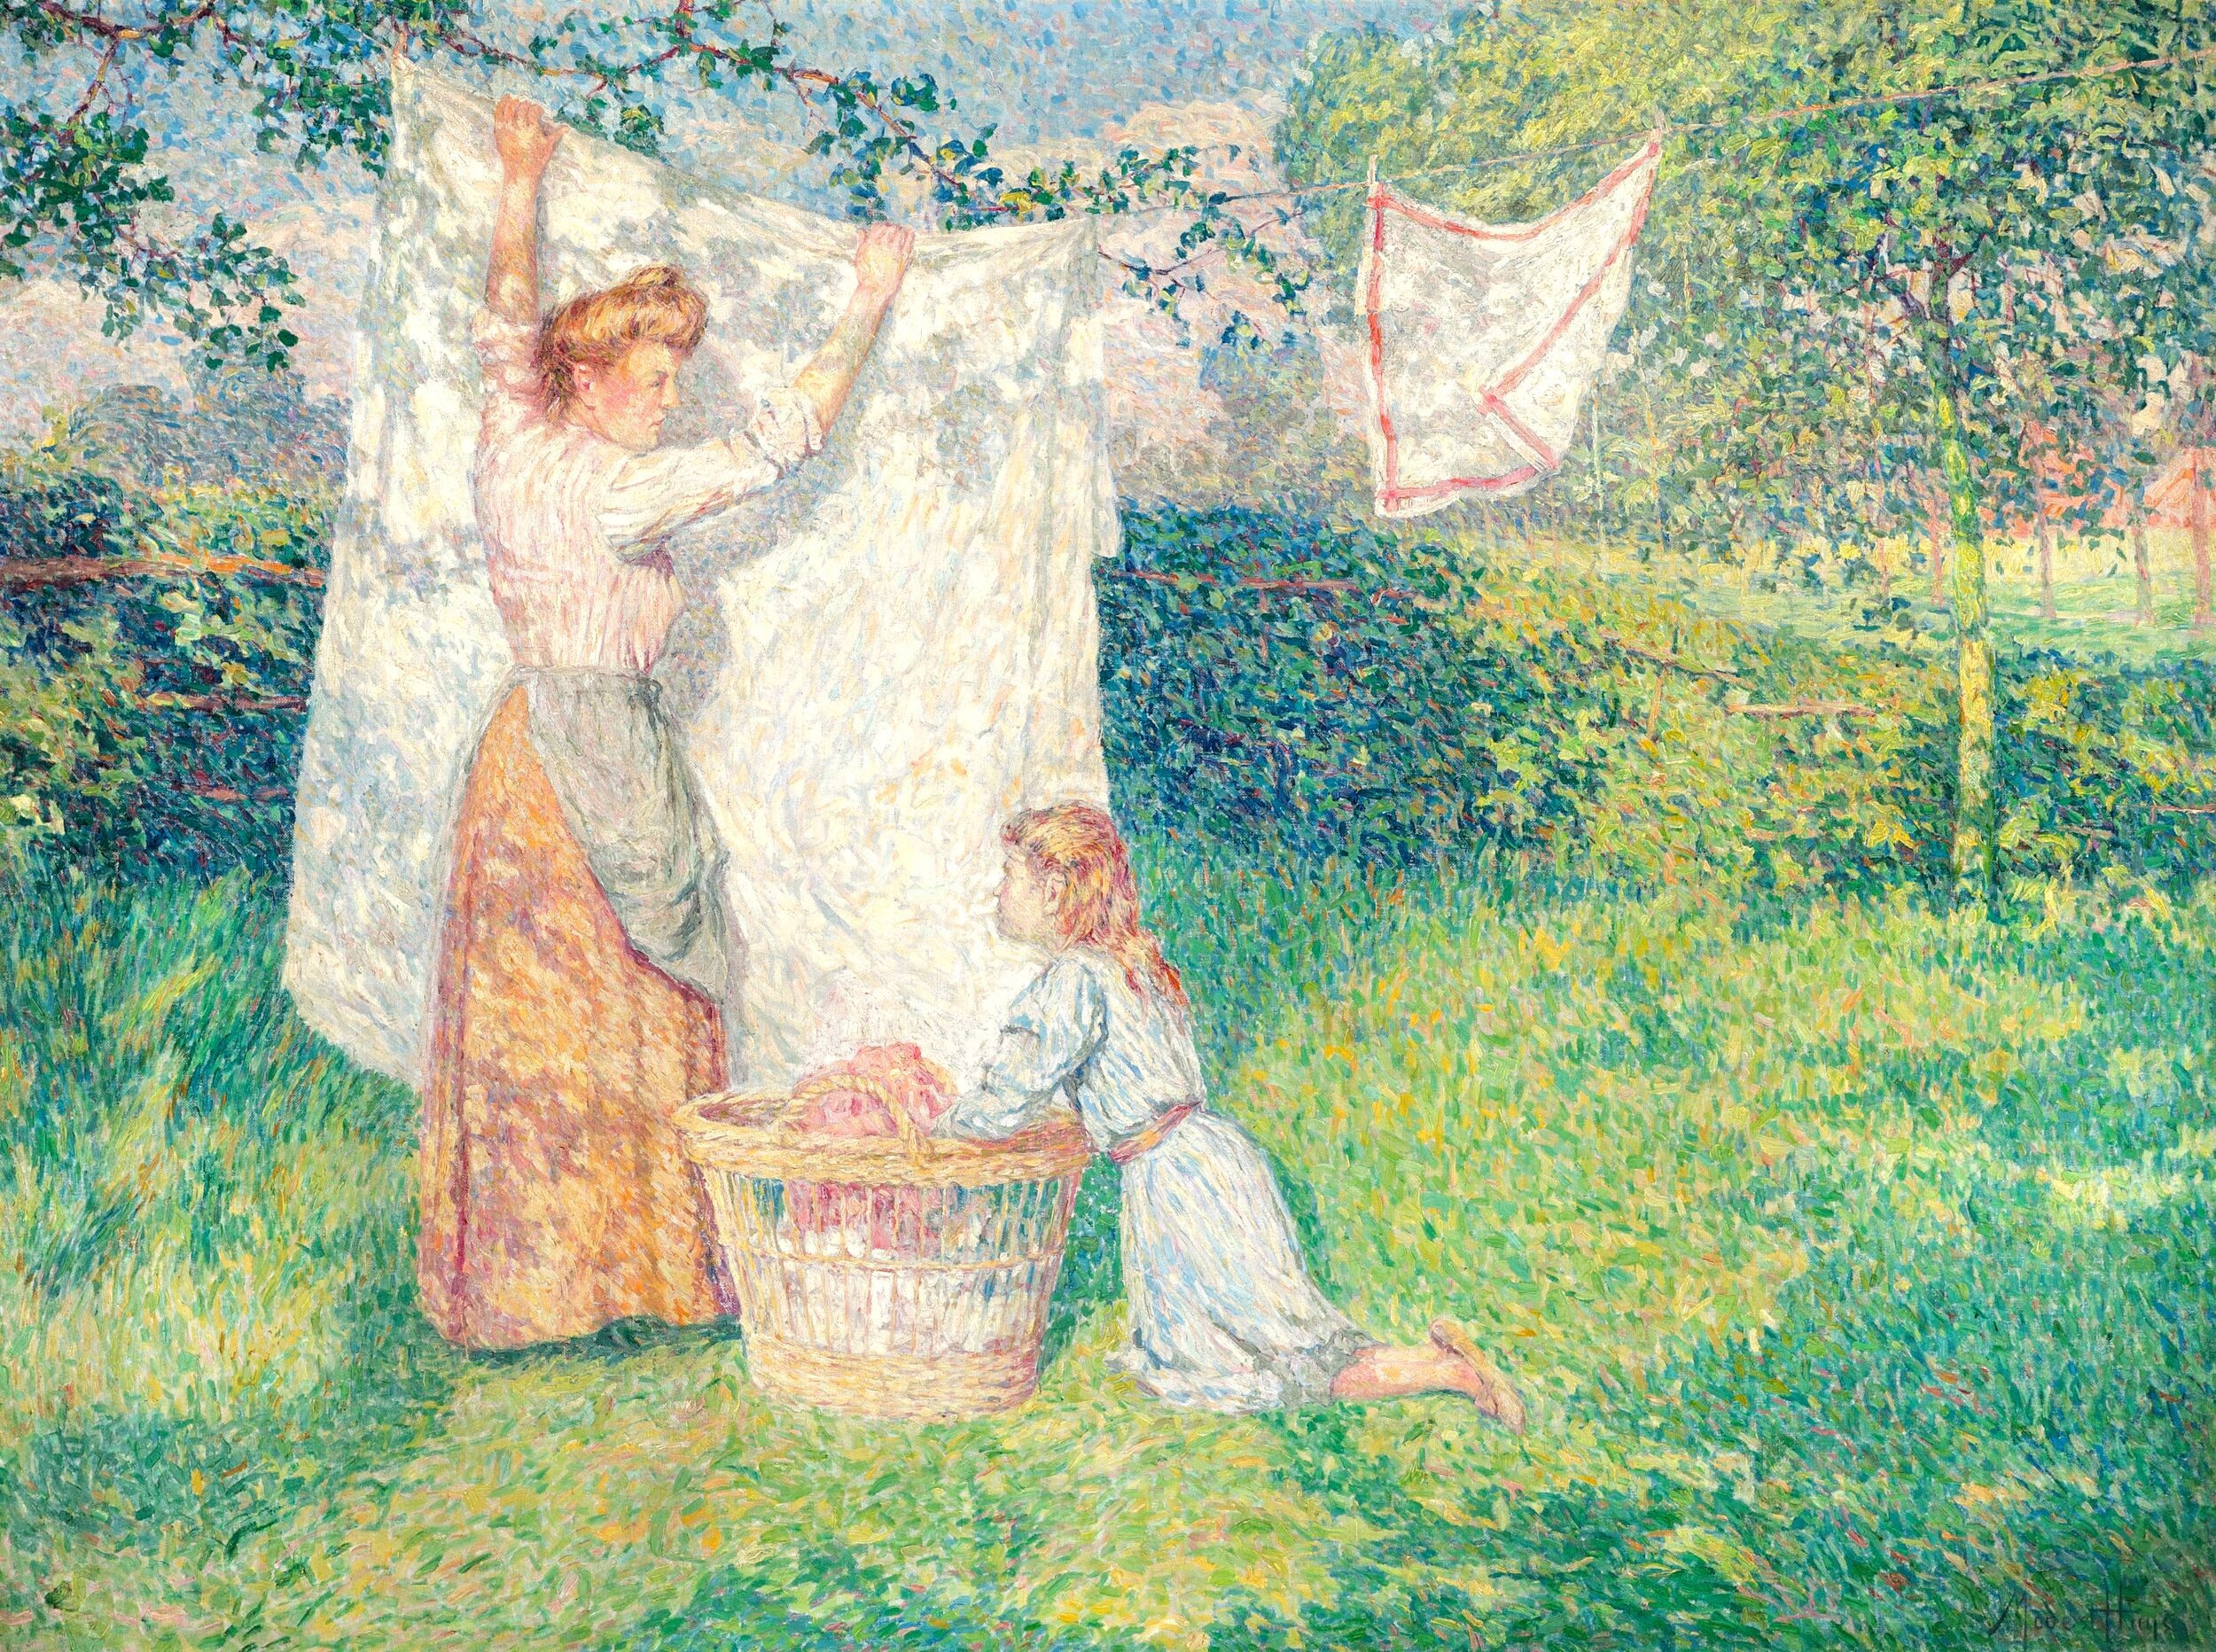 晾乾衣物 by Modest Huys - 1908 年 - 95 x 128 厘米 